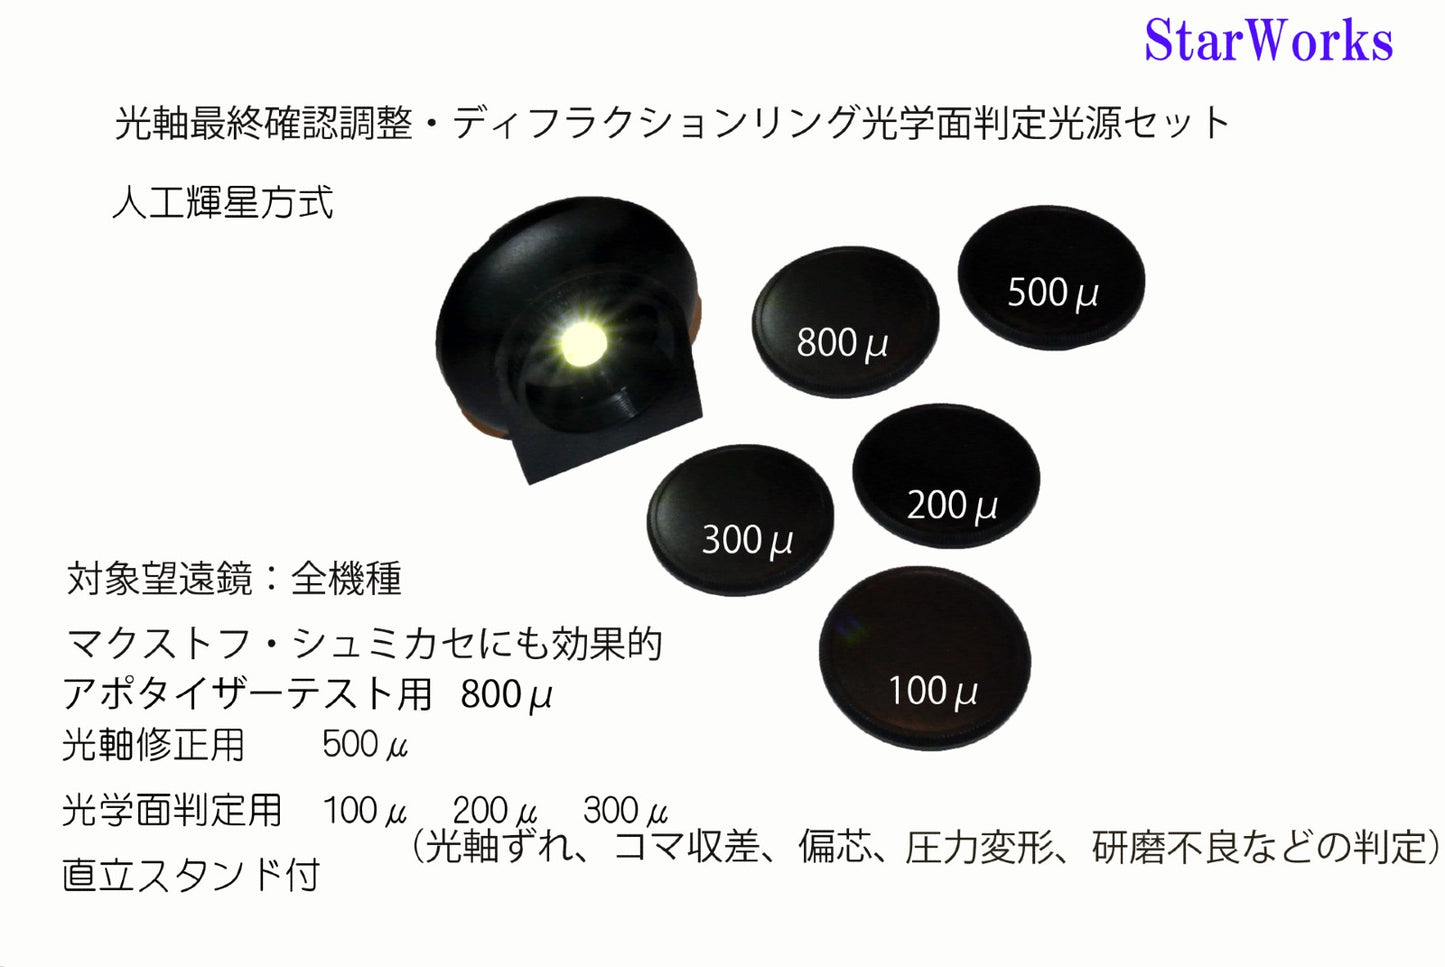 Star Tester 一种用于调整天文望远镜光轴和确定折射环的光源